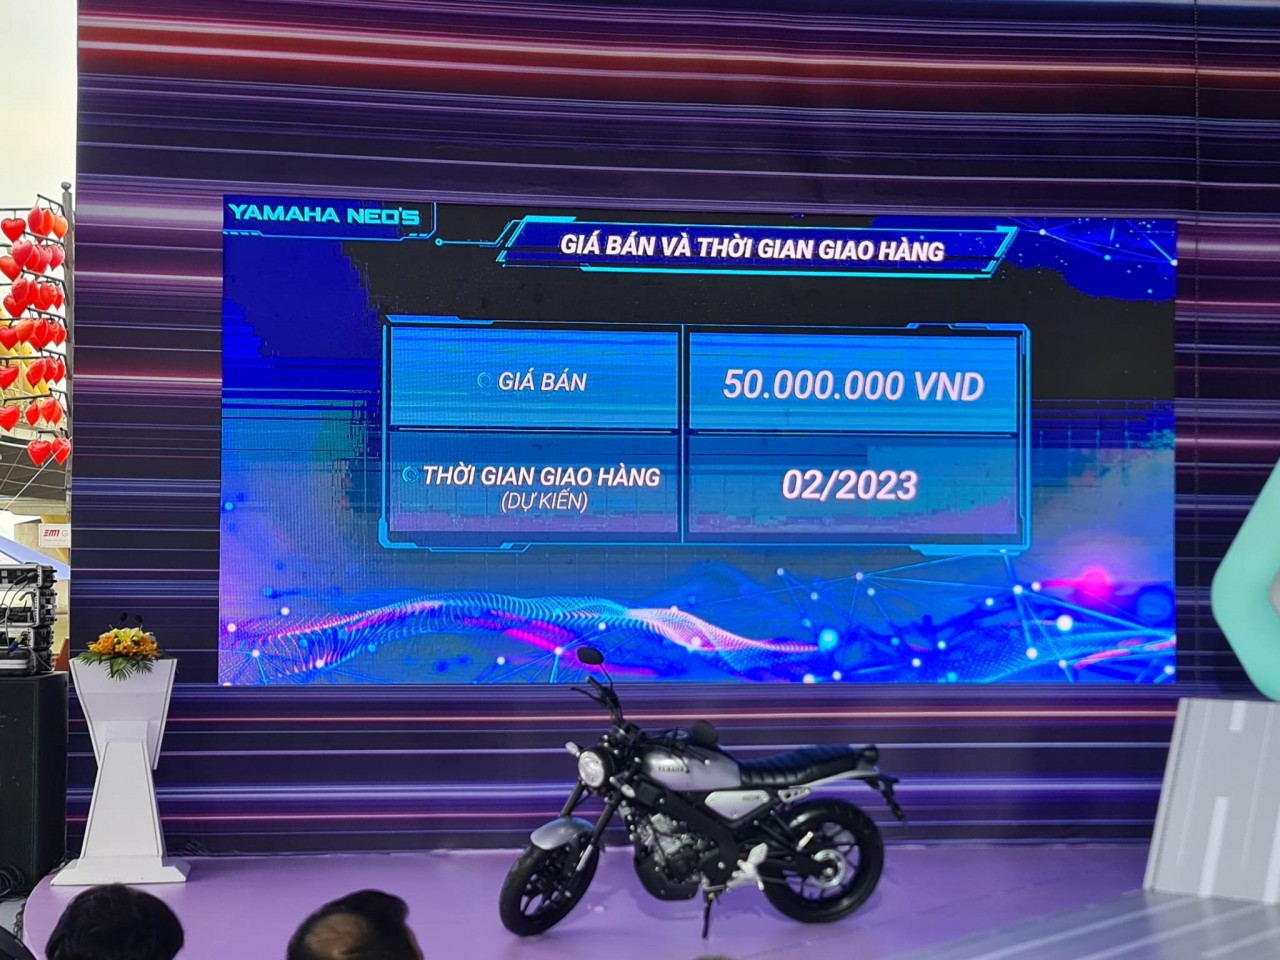 Yamaha Việt Nam mở bán xe điện tại Việt Nam